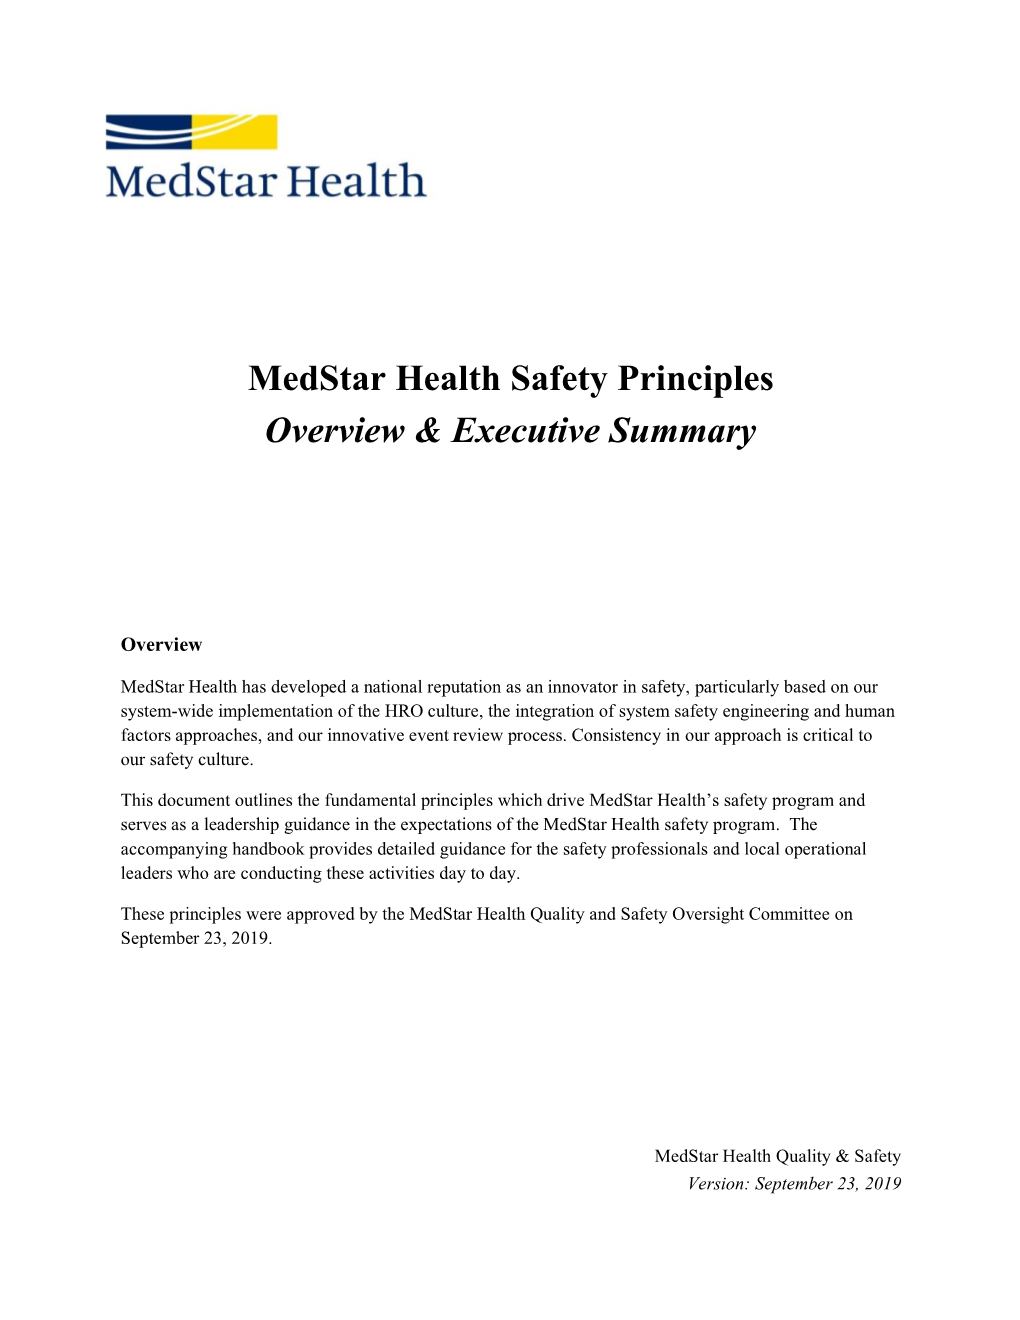 Medstar Quality Safety Principles (PDF)